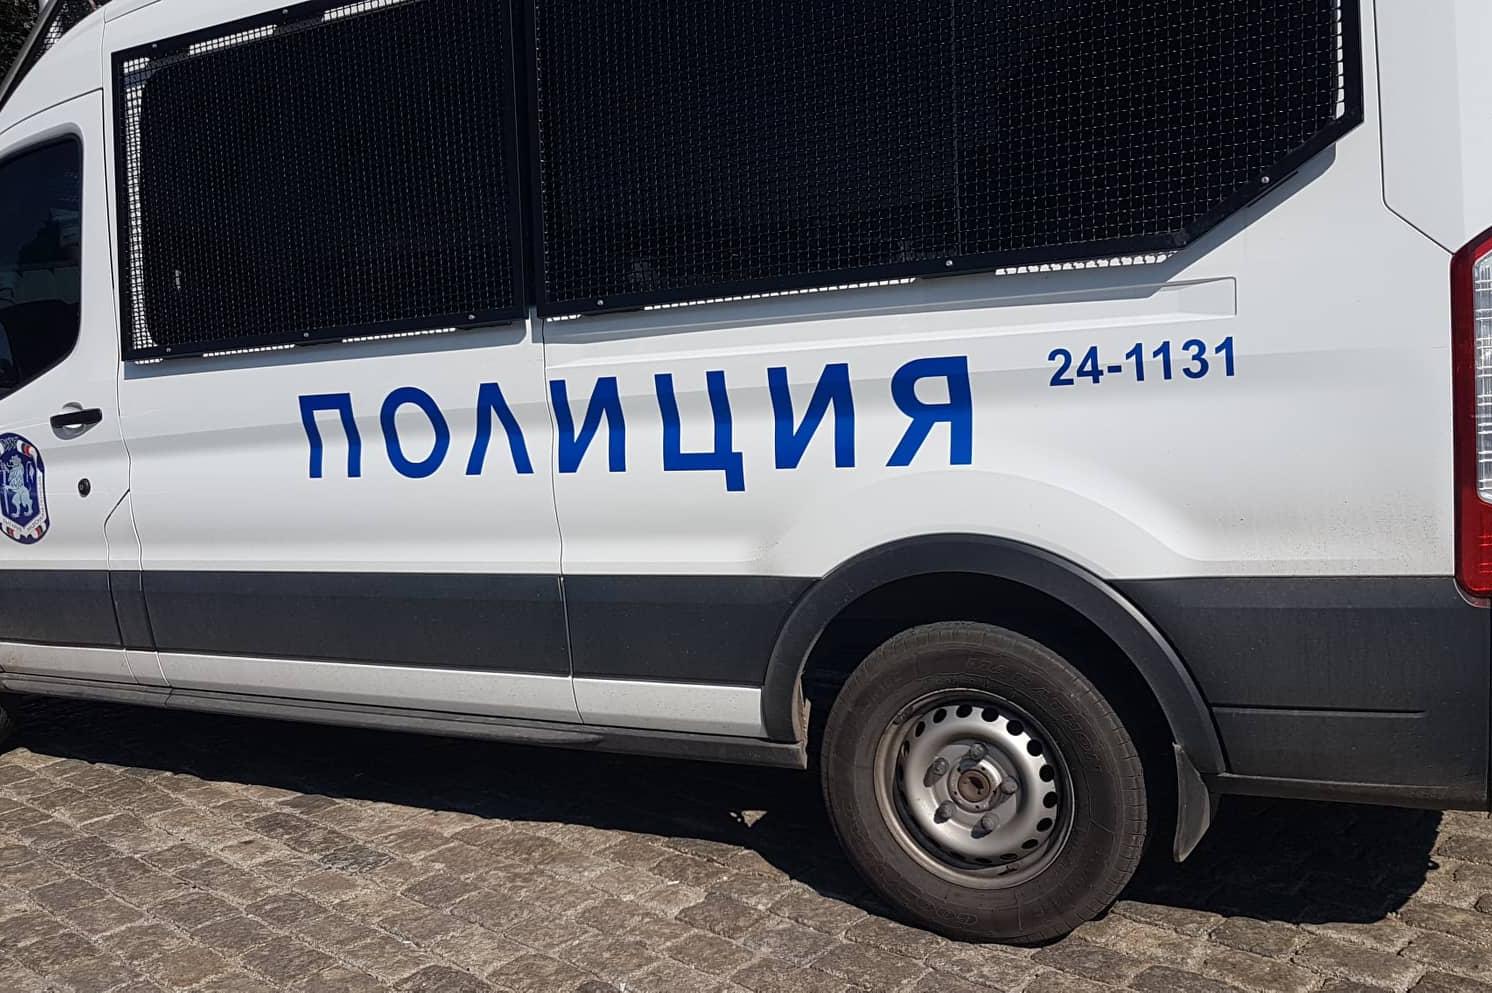 Полицаи от Костенец хванаха шофьор да превозва незаконно трима